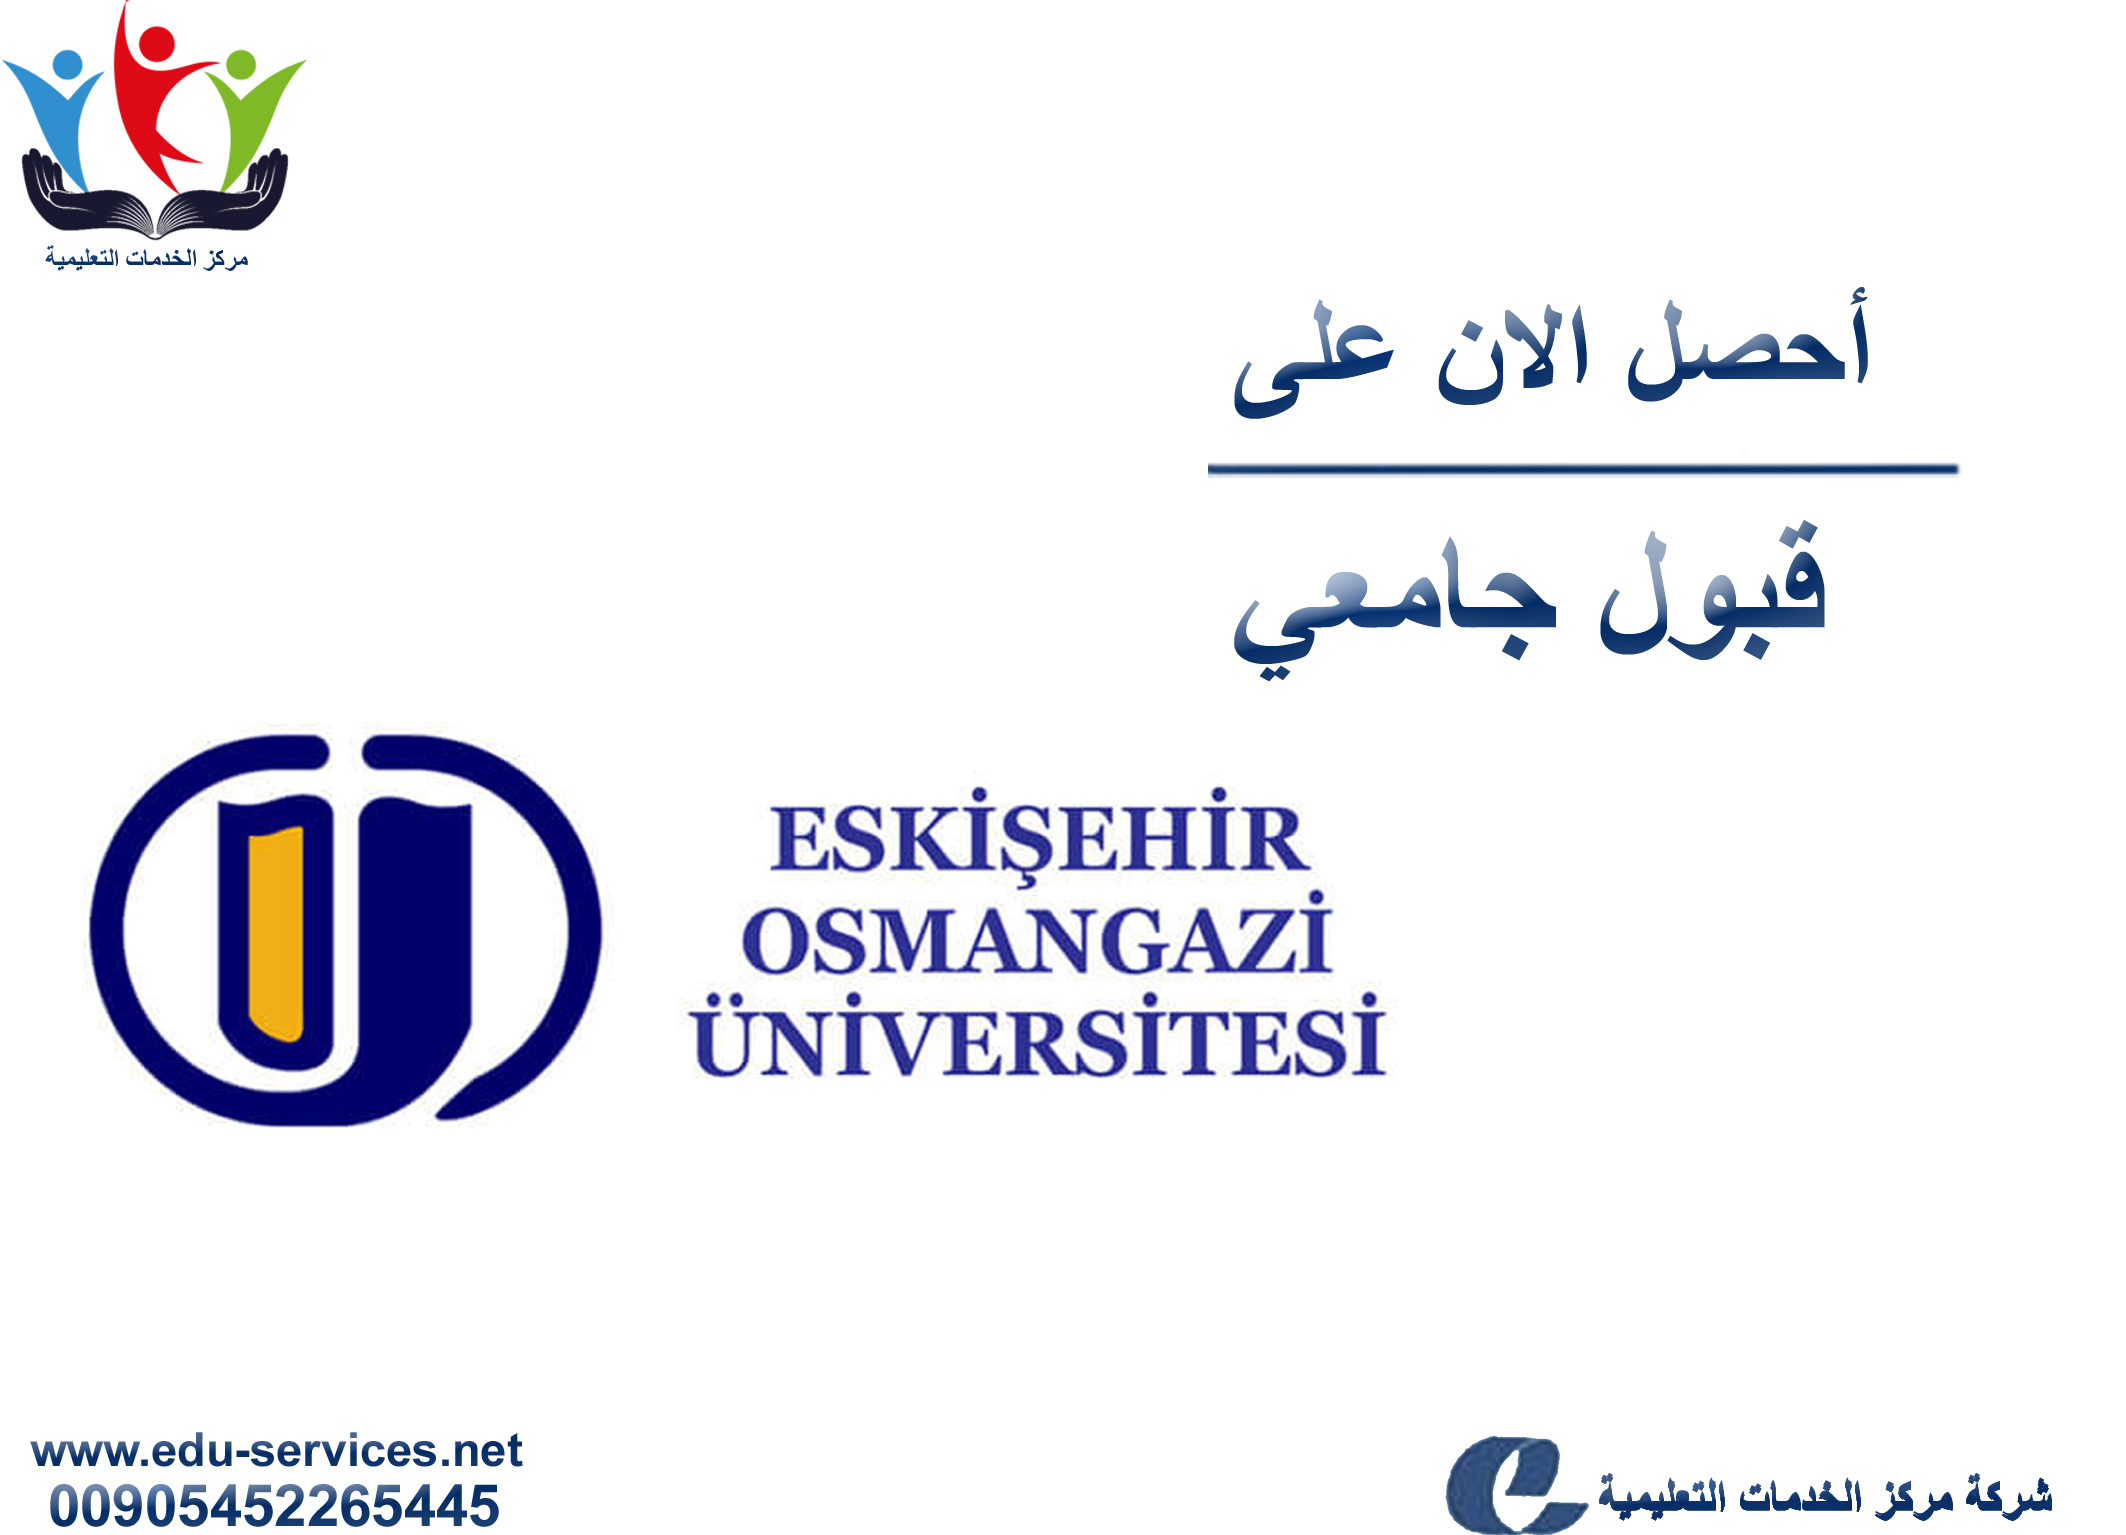 افتتاح التسجيل في جامعة اسكي شهير عثمان غازي للعام 2018-2019